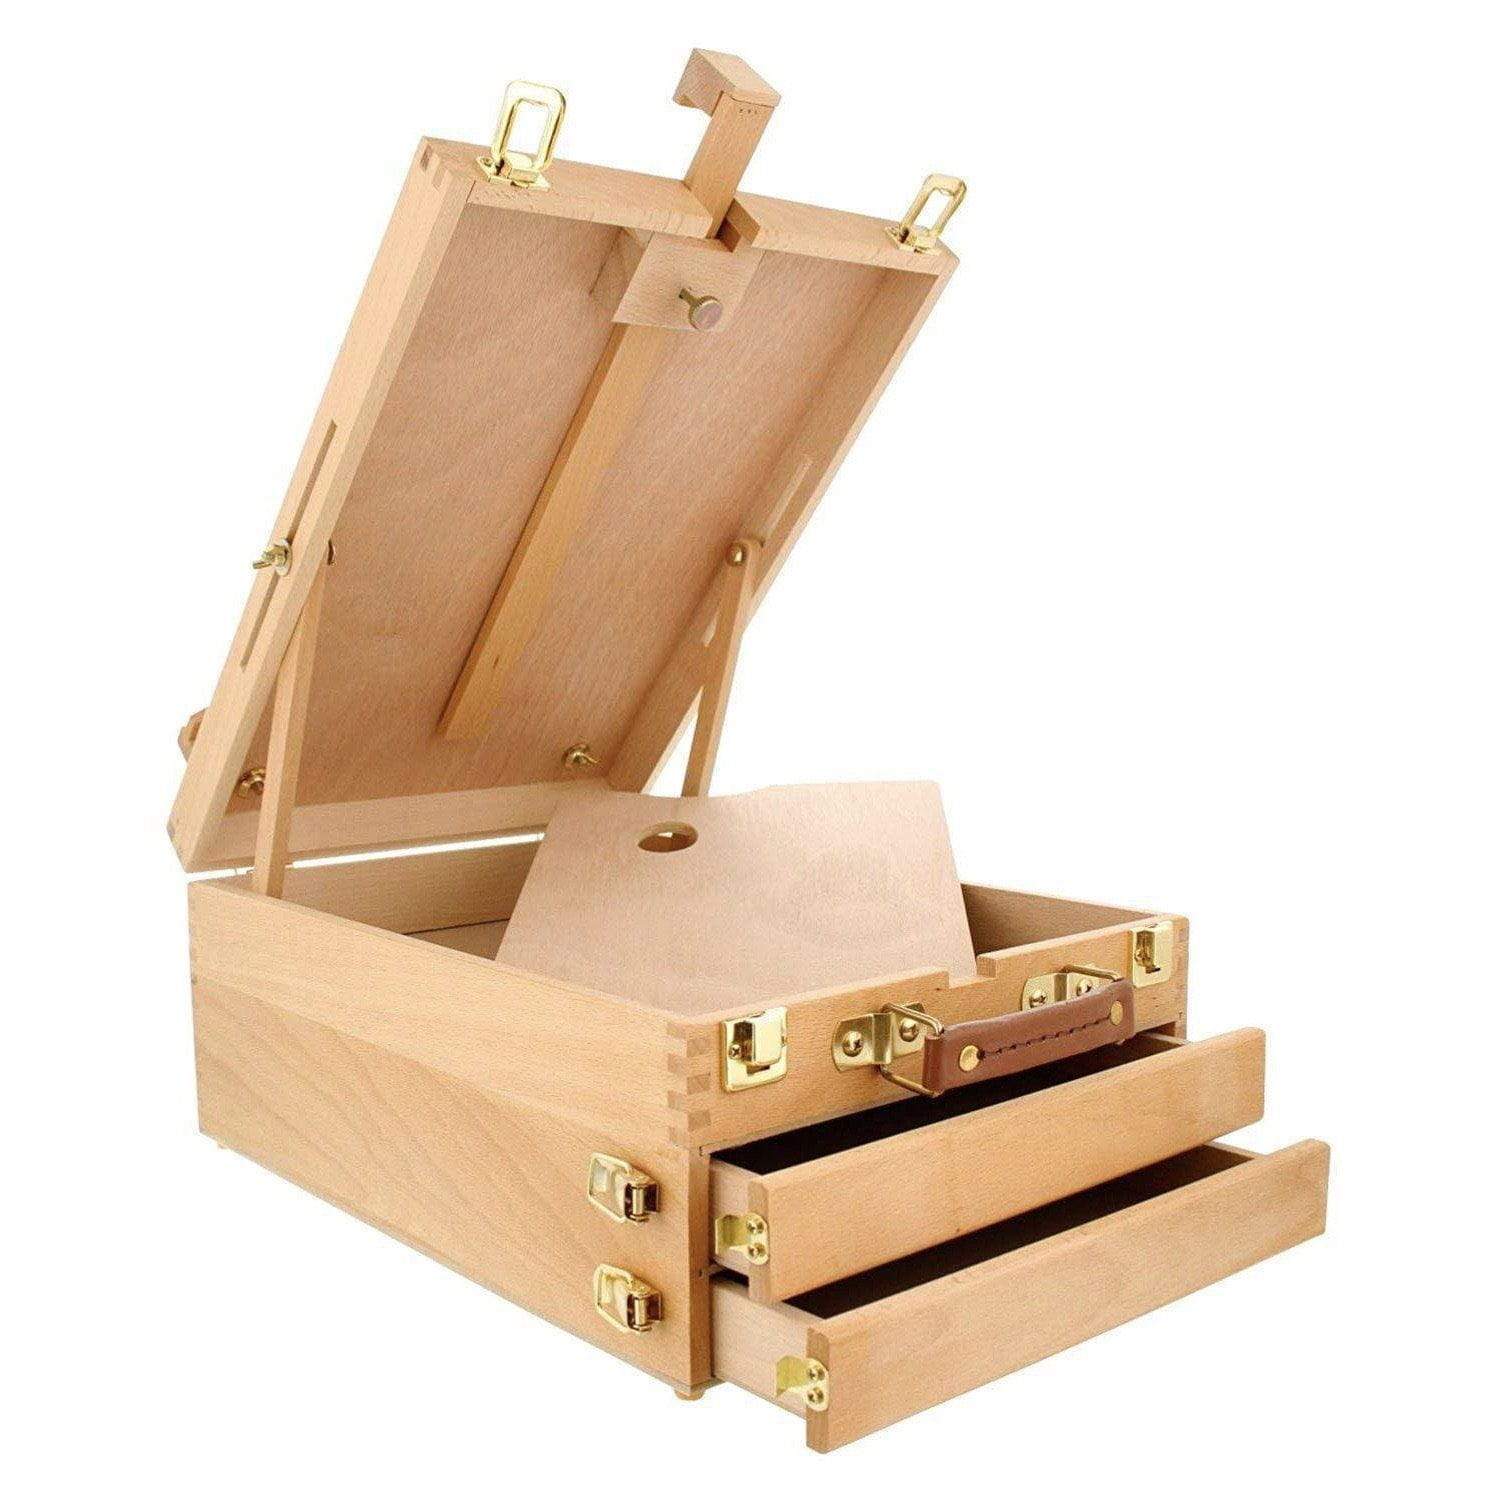 Kingart 2 - Tier Wooden Artist Storage Box - Espresso